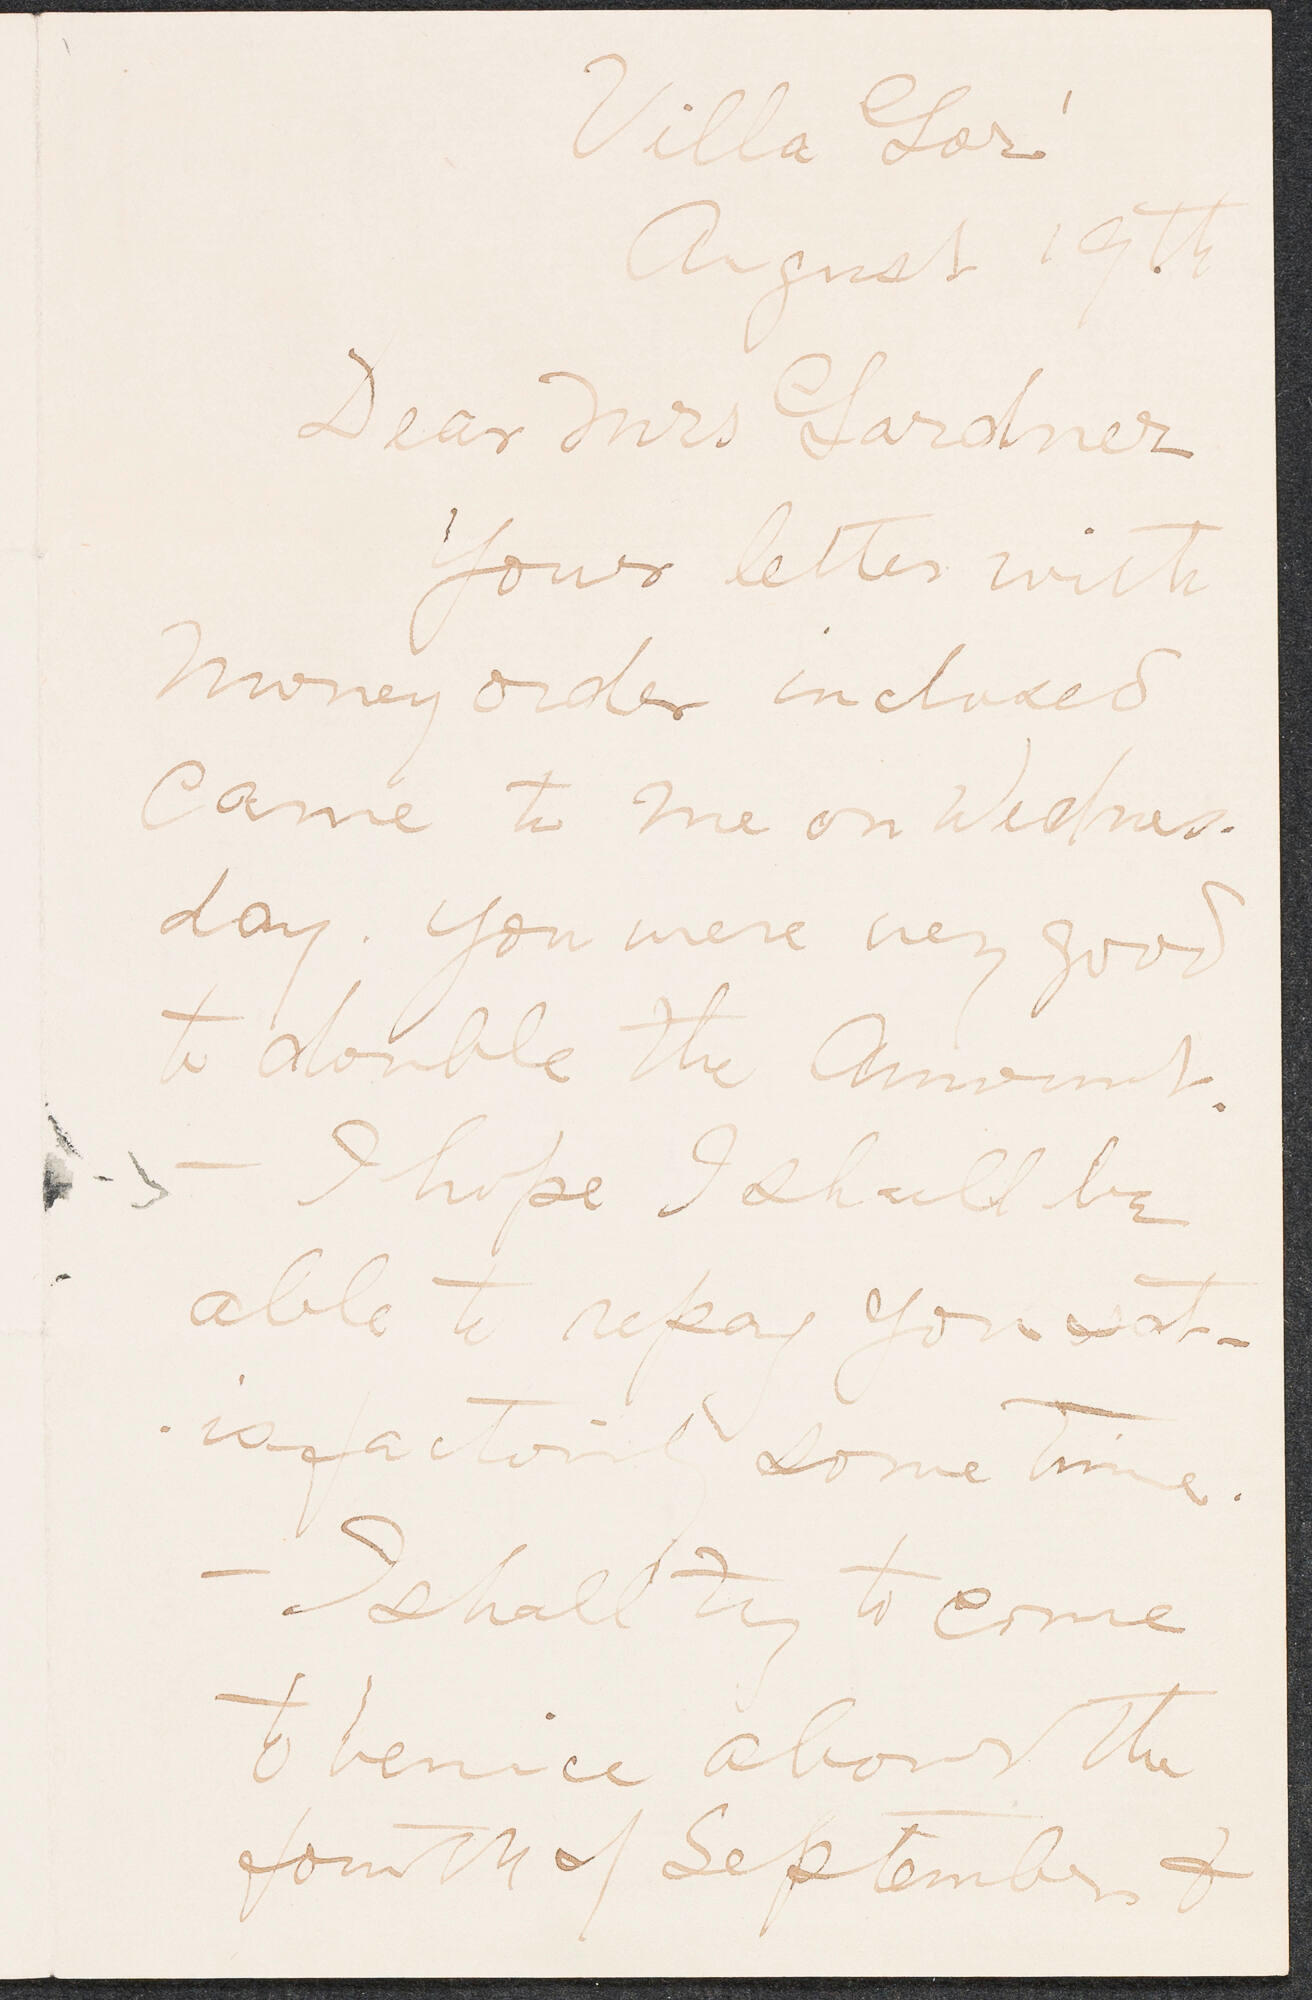 Handwritten letter in brown ink from Andreas Martin Andersen to Isabella Stewart Gardner.